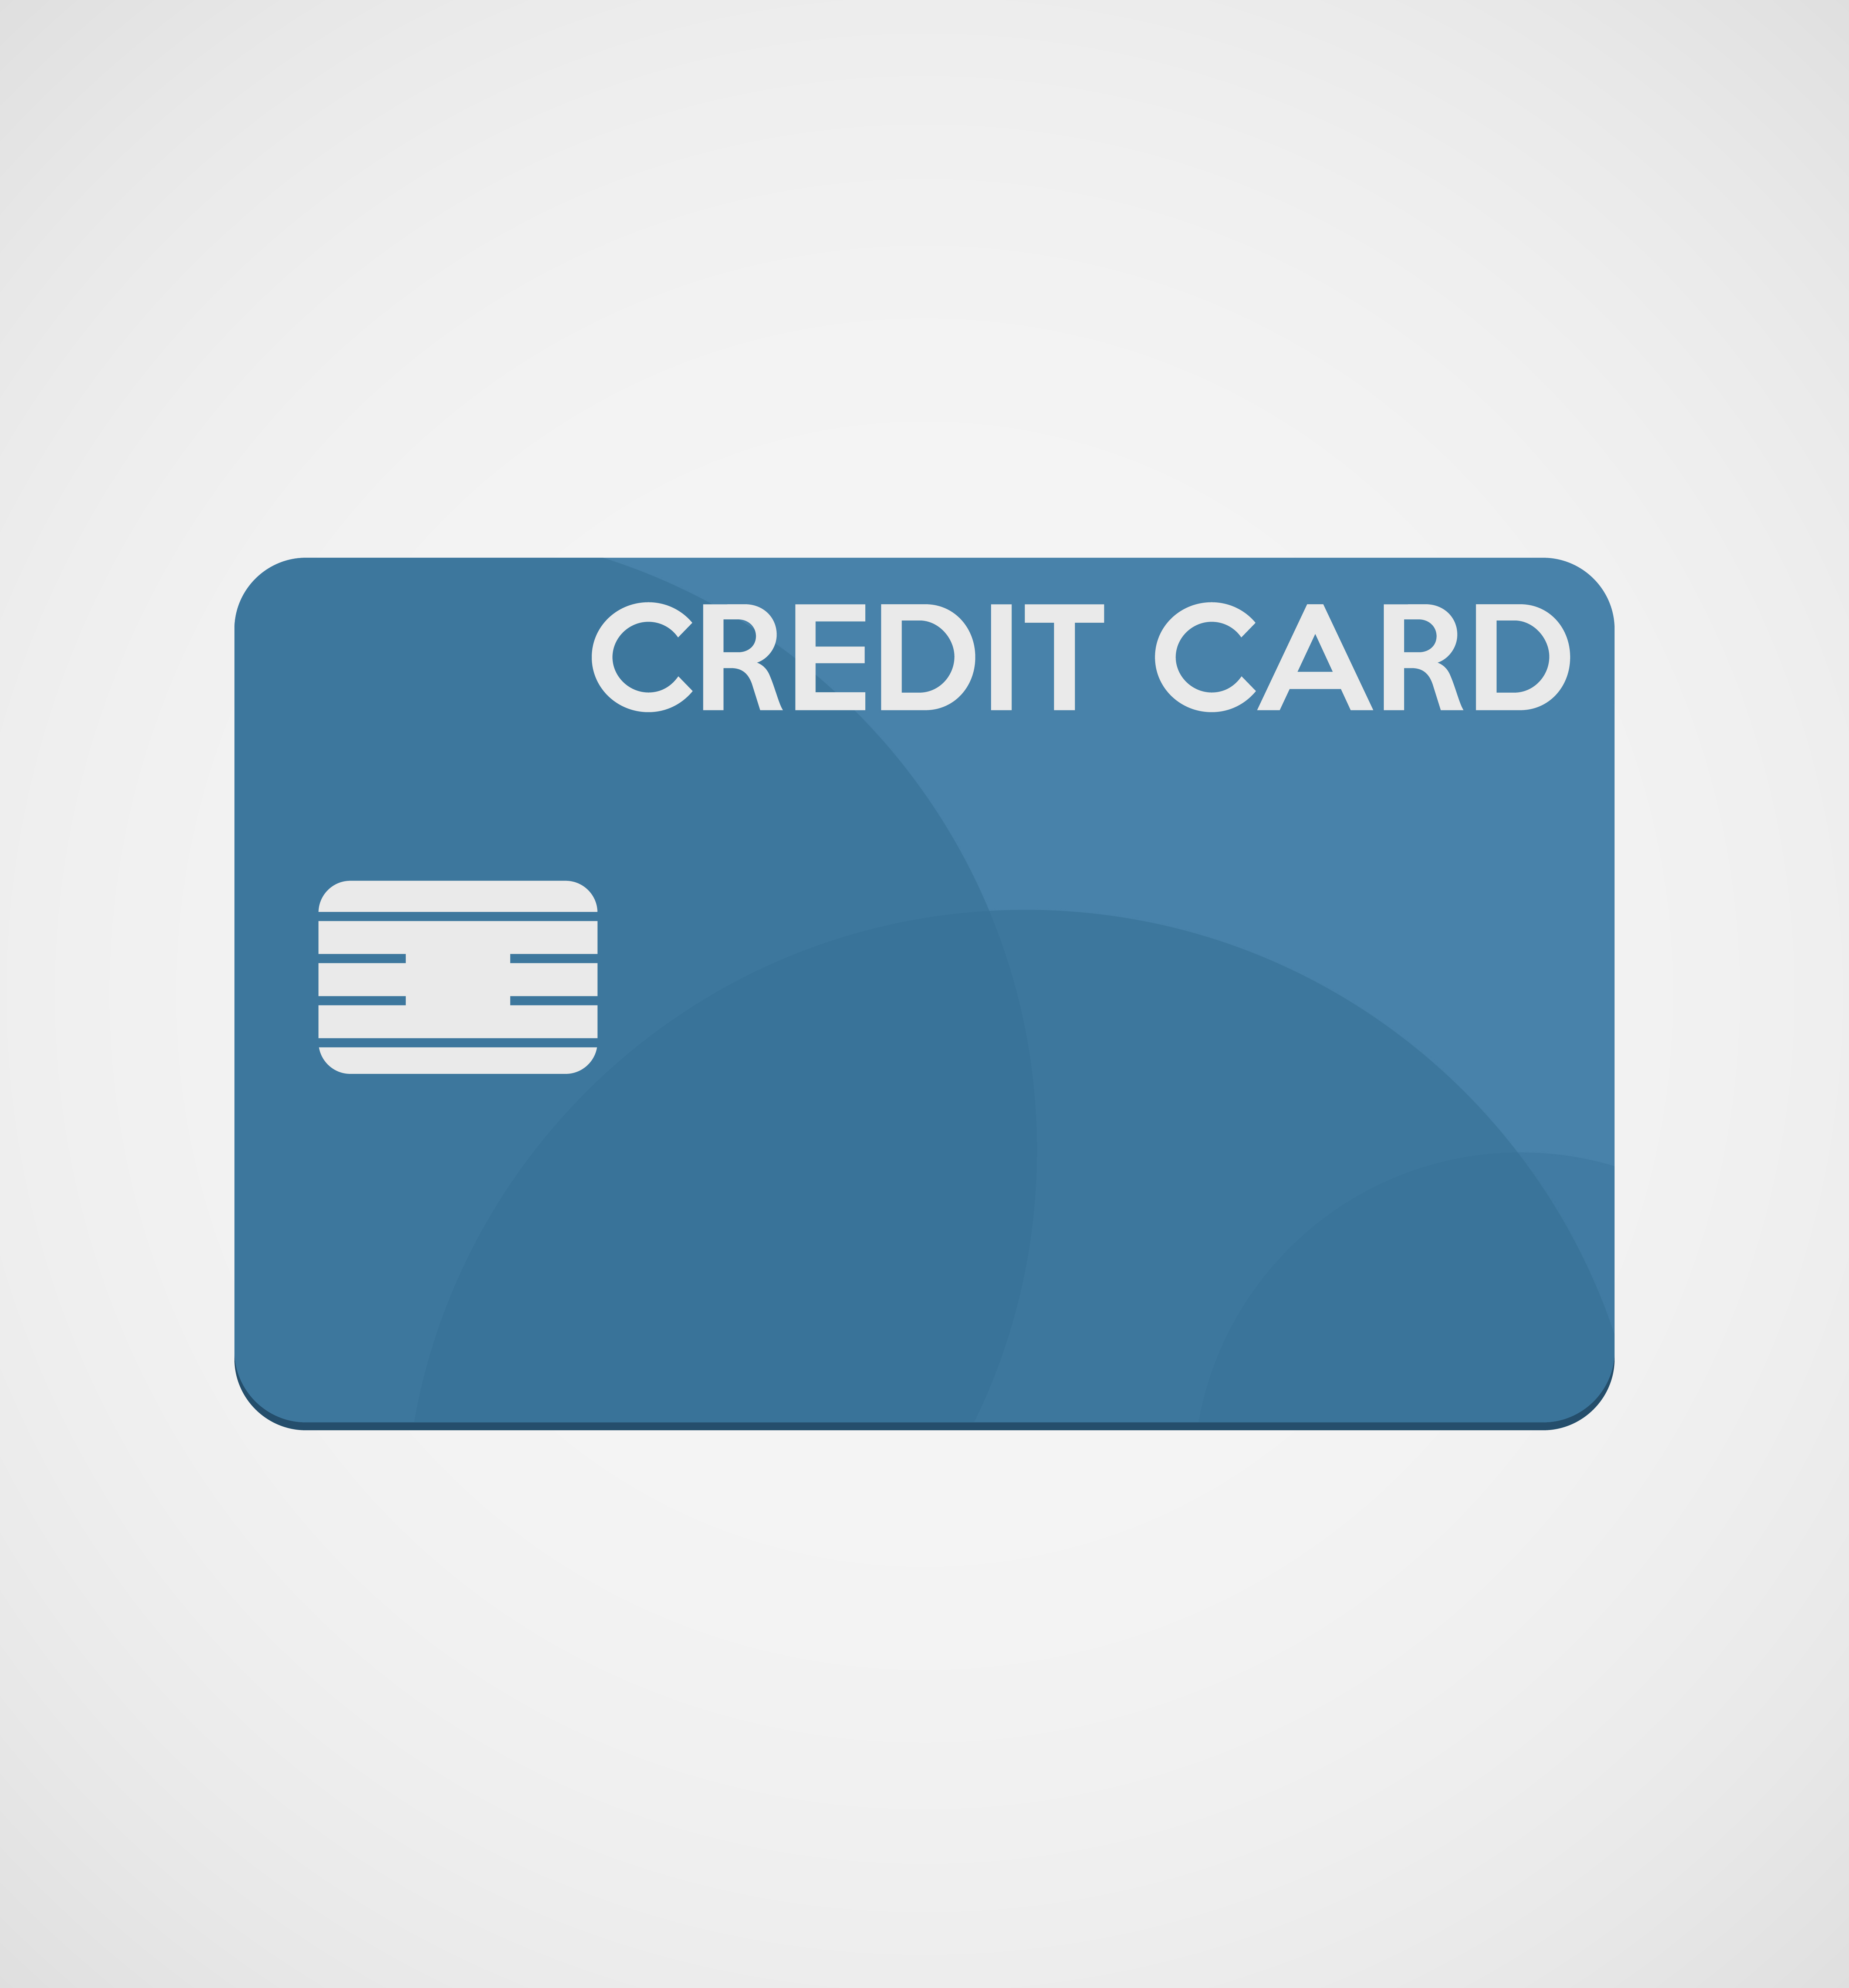 Credit card in a flat design 541103 - Download Free Vectors, Clipart Graphics & Vector Art